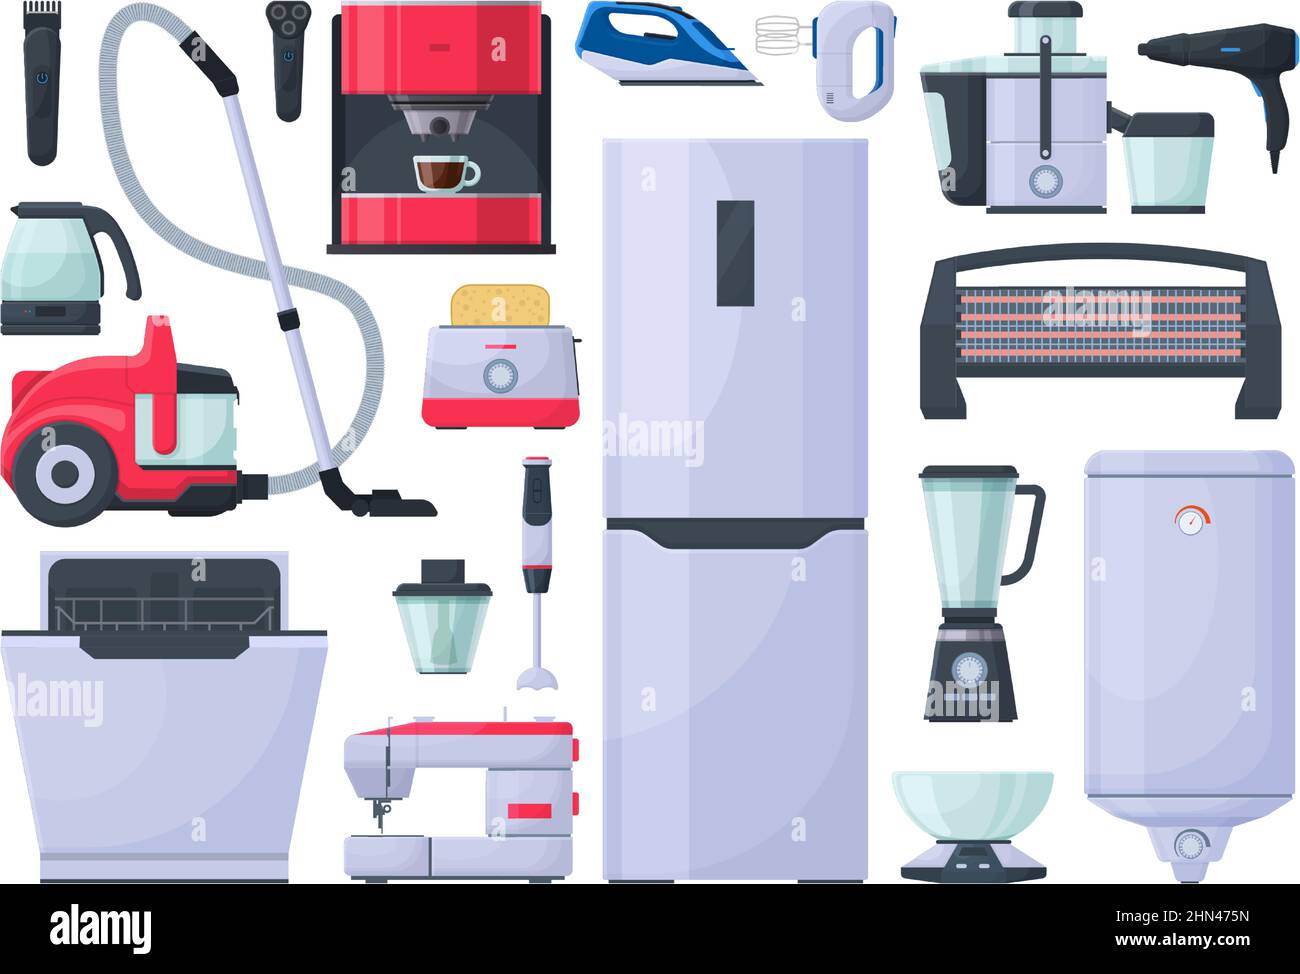 Haushaltsgeräte, Staubsauger, Bügeleisen und Kaffeemaschine. Kühlschrank,  Mixer und Toaster elektronische Gadgets Vektor Illustration Set. Elektrisch  Stock-Vektorgrafik - Alamy